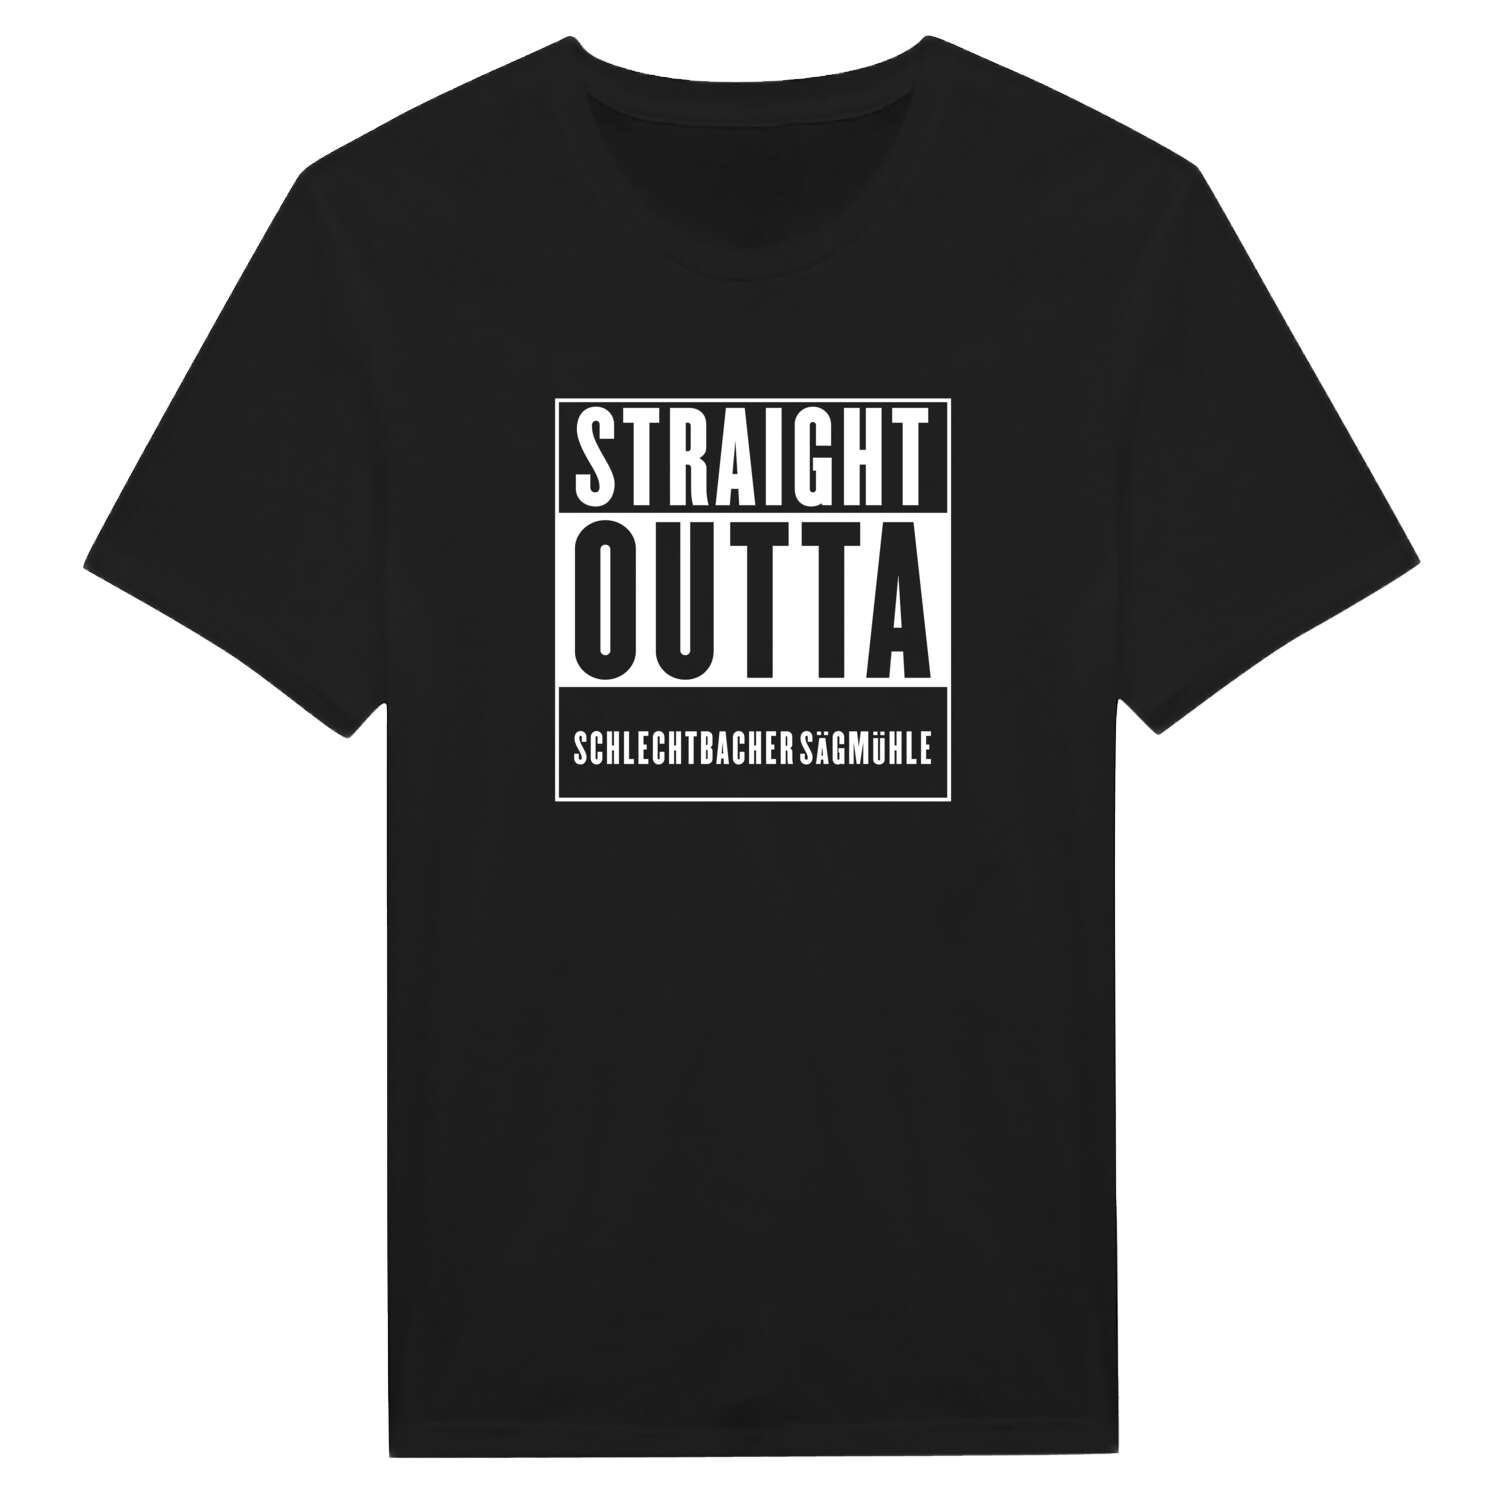 Schlechtbacher Sägmühle T-Shirt »Straight Outta«